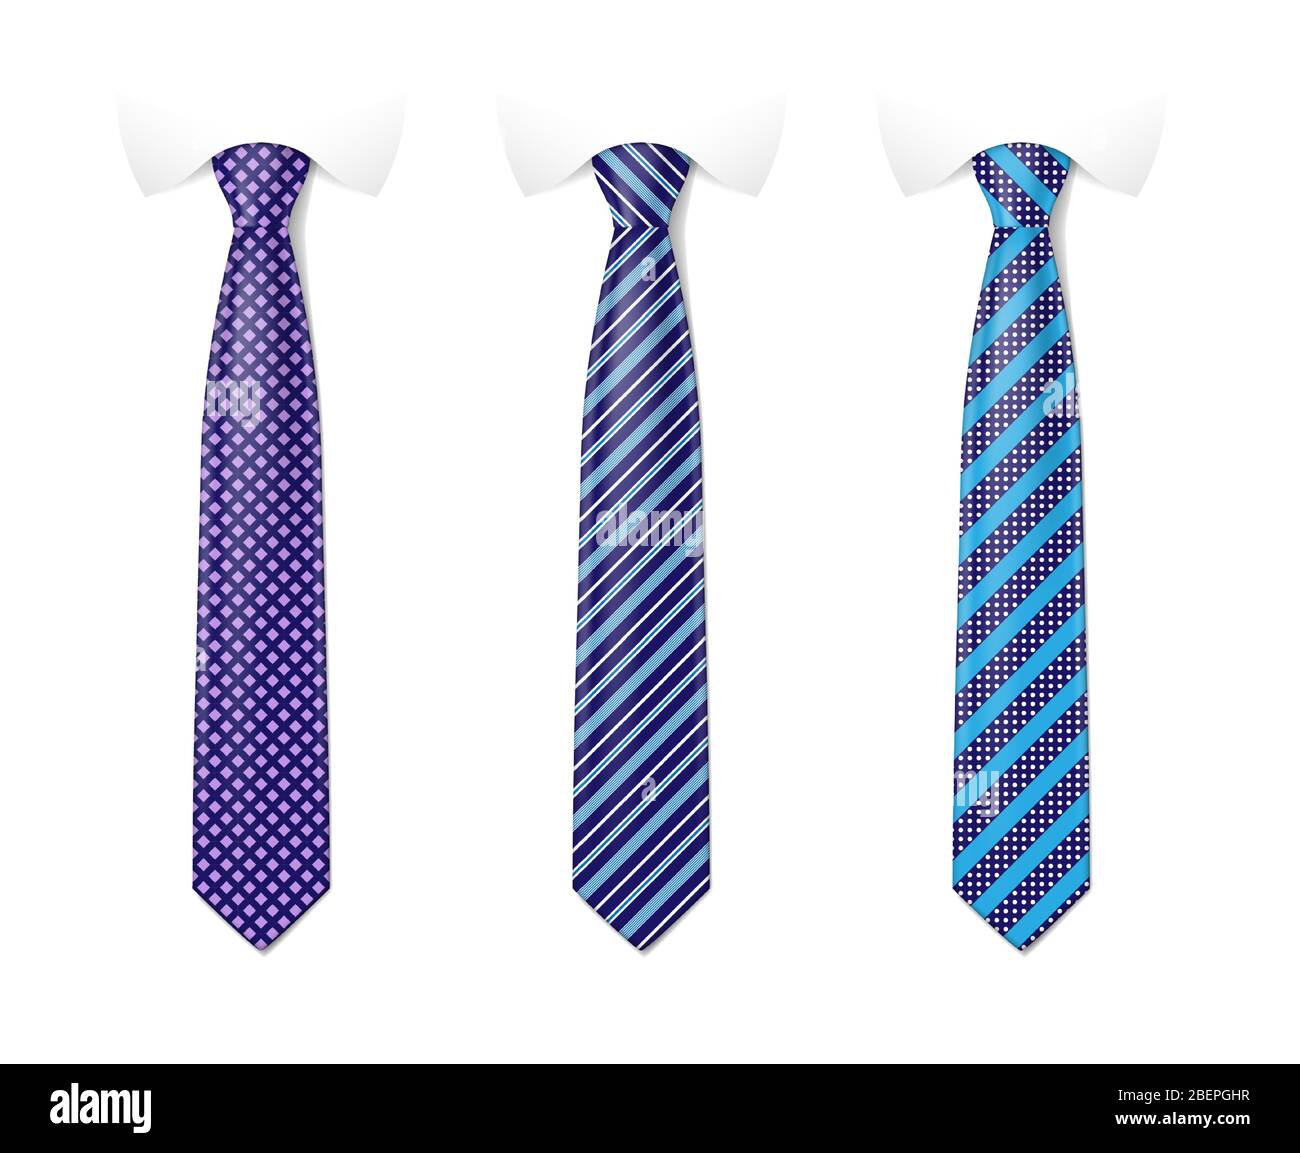 Cravate homme de couleur. Attachez votre mockup avec un motif de mode  différent. Modèles avec textures en soie à rayures. Illustration  vectorielle Image Vectorielle Stock - Alamy